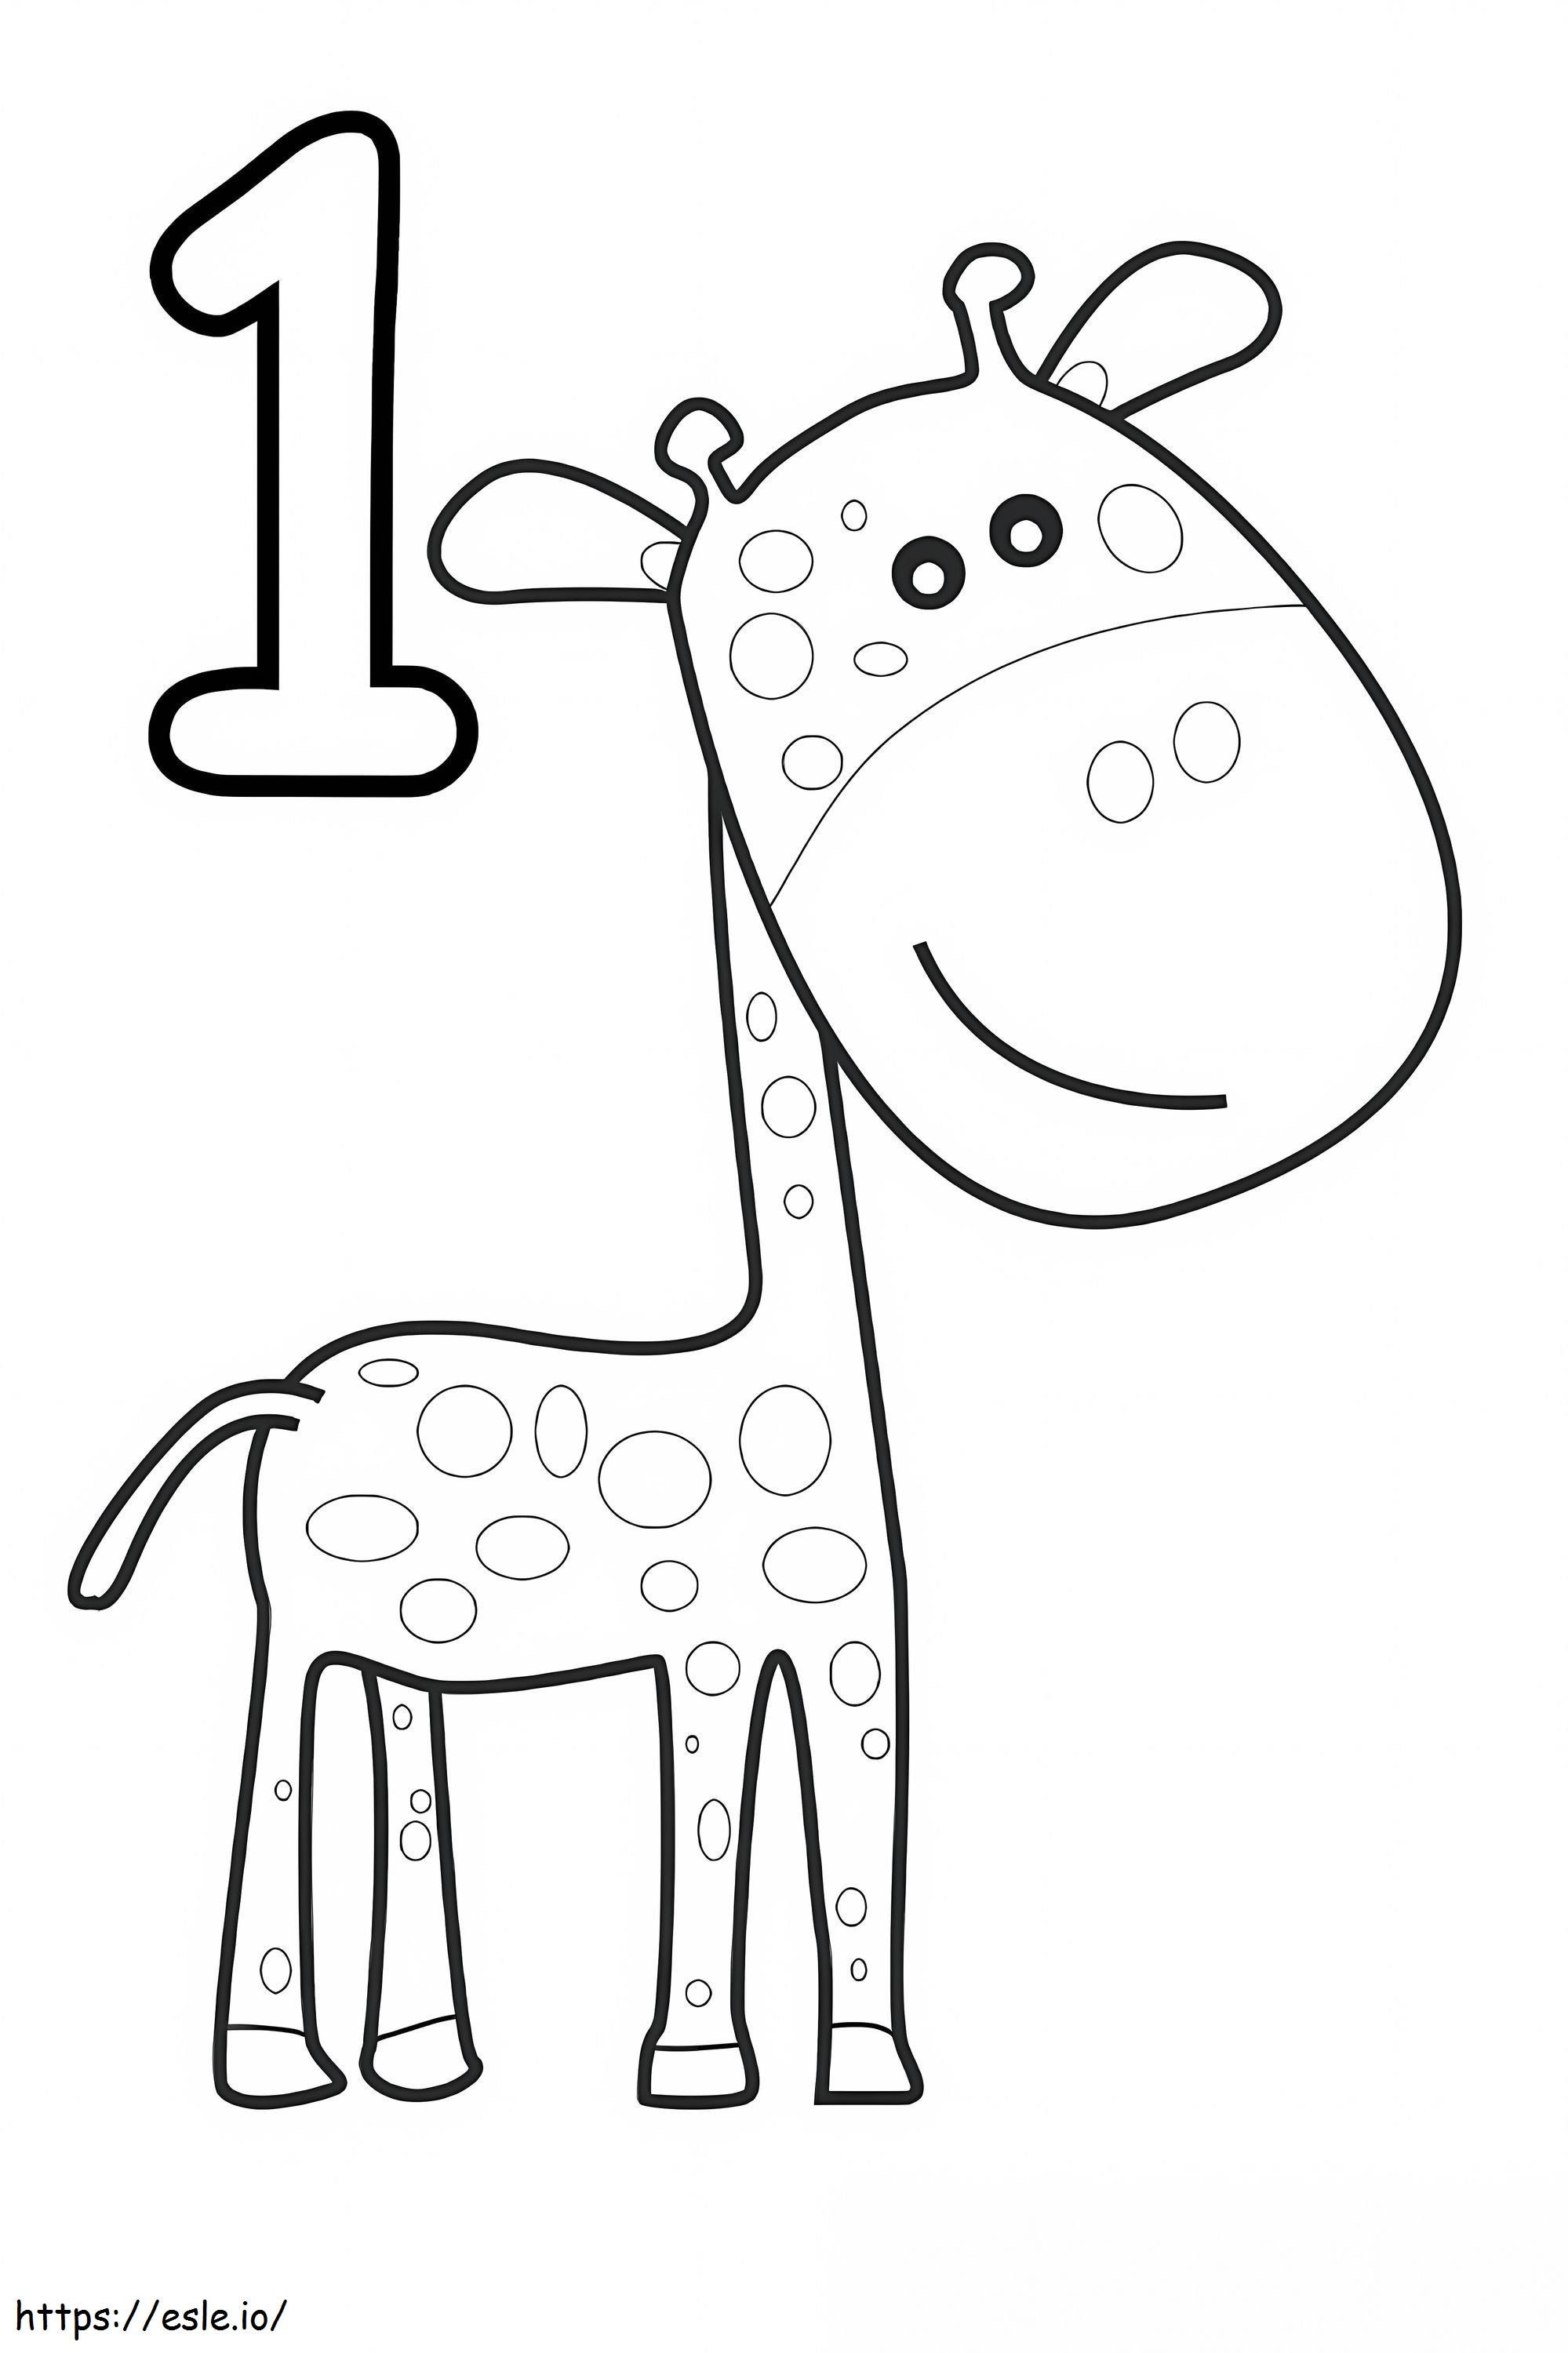 Numero 1 E Giraffa Sorridente da colorare